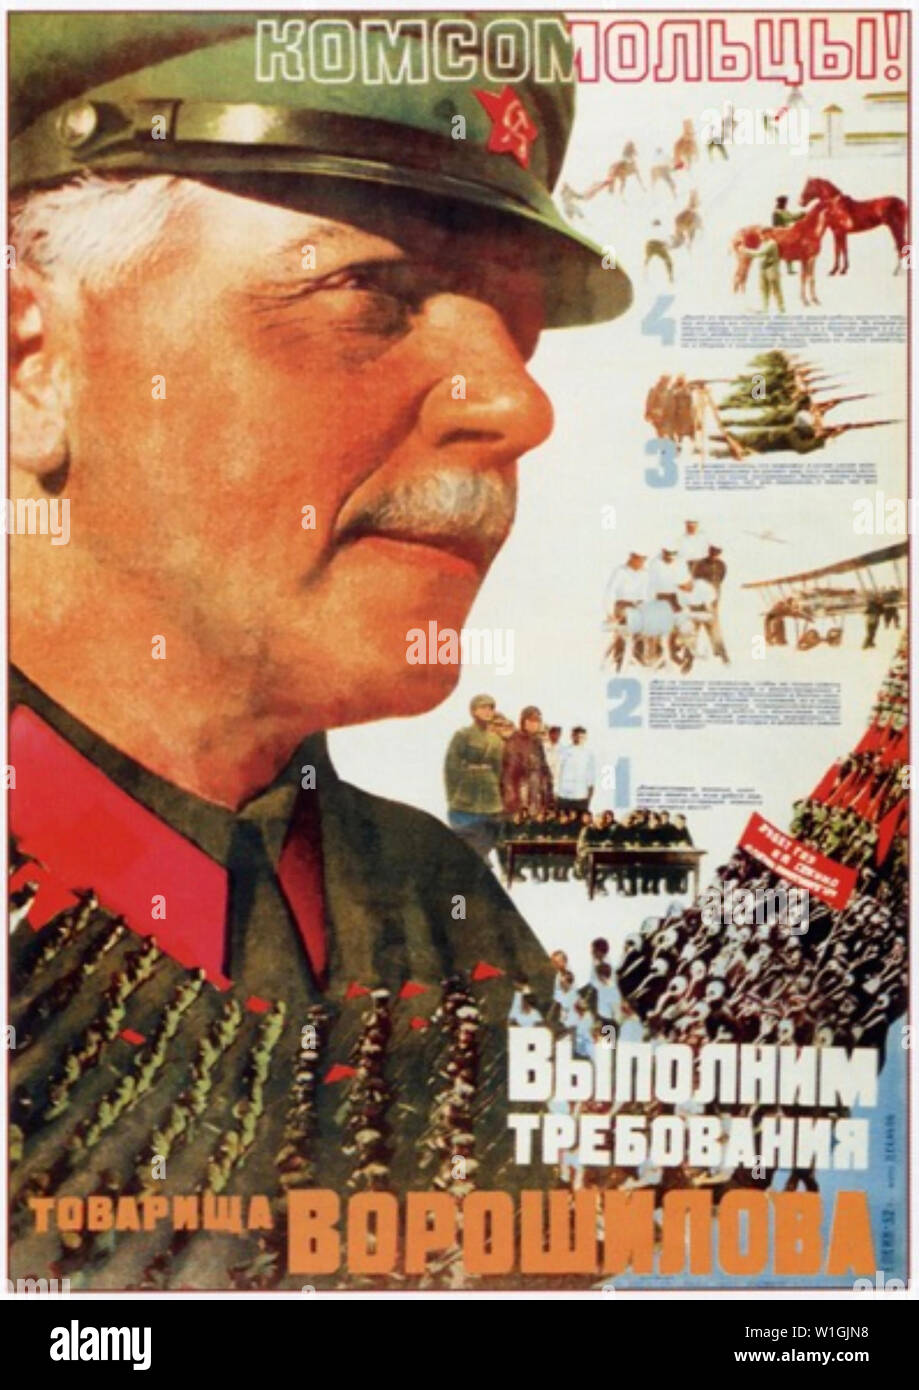 KOMSOMOL MEMBERS ! WE MUST FULFILL COMRADE VOROSHILOV'S DEMANDS   1942 Soviet poster Stock Photo